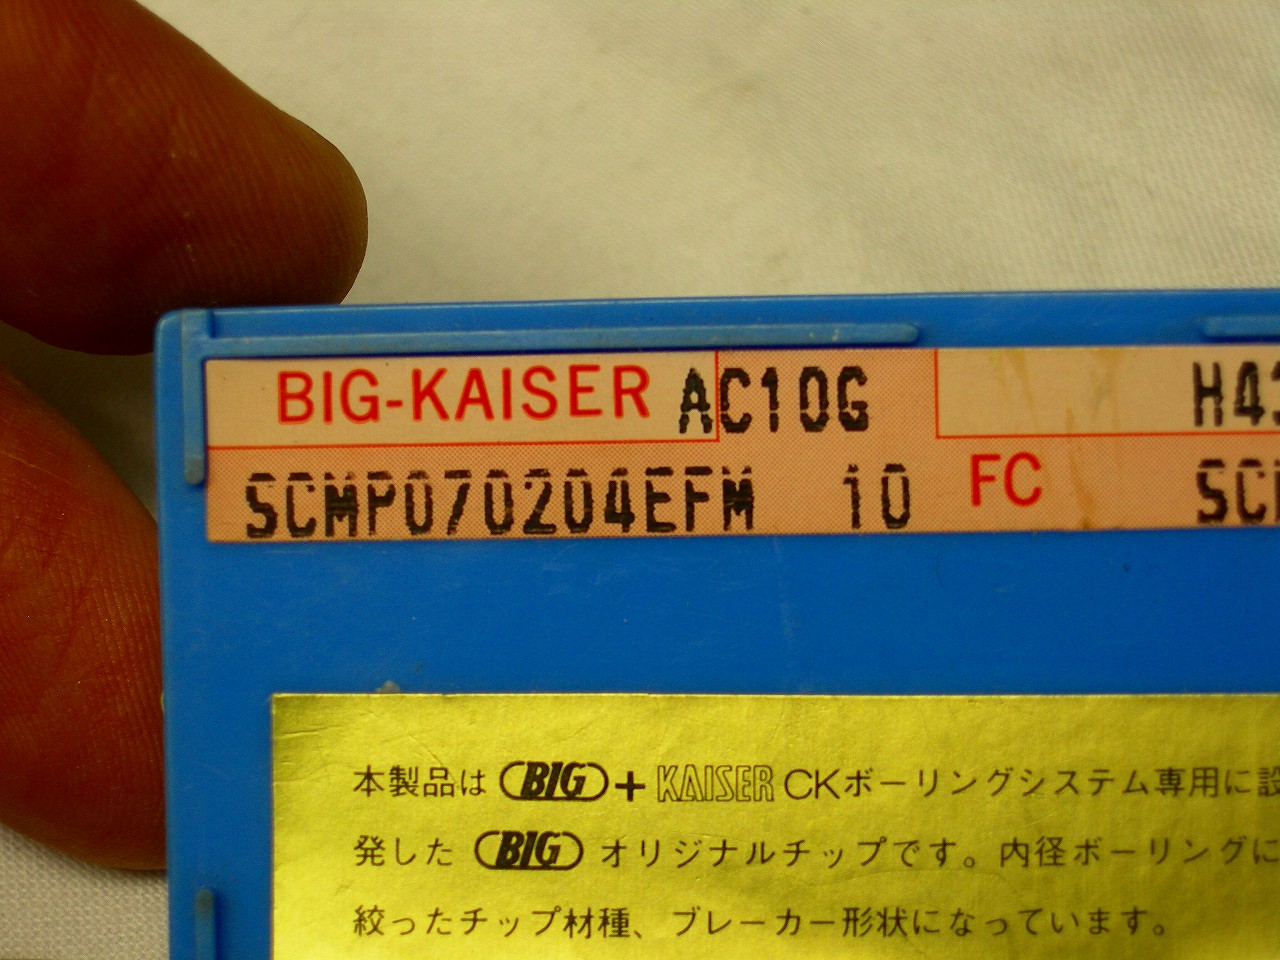 大昭和精機　BIG　SCMP070204EFM 　材質AC10G　